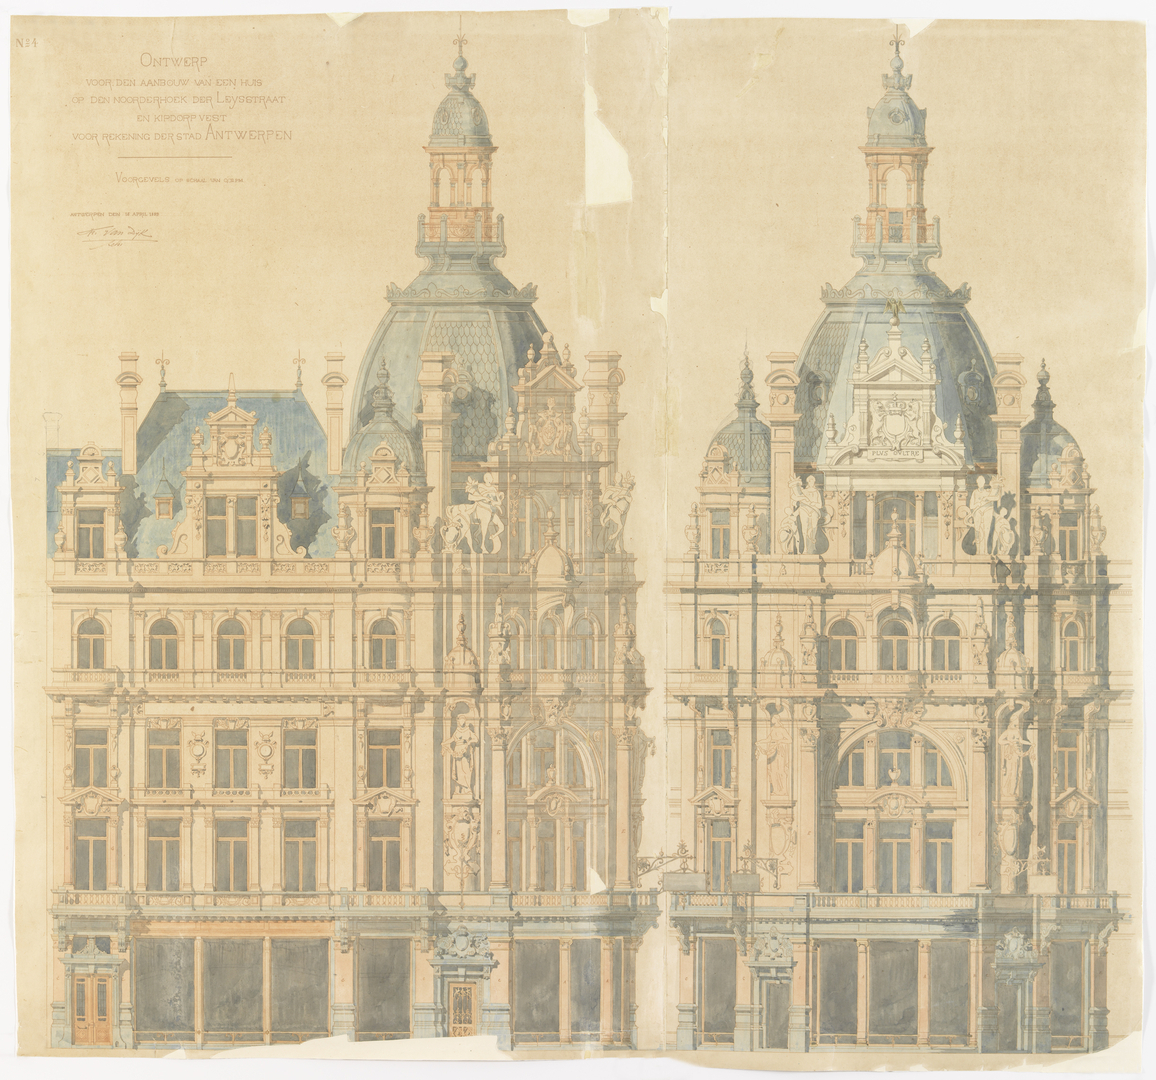 Tekening over het neobarokke 'Grand Hôtel Métropole' te Antwerpen door Frans Van Dijk (Adres: Leysstraat 27)